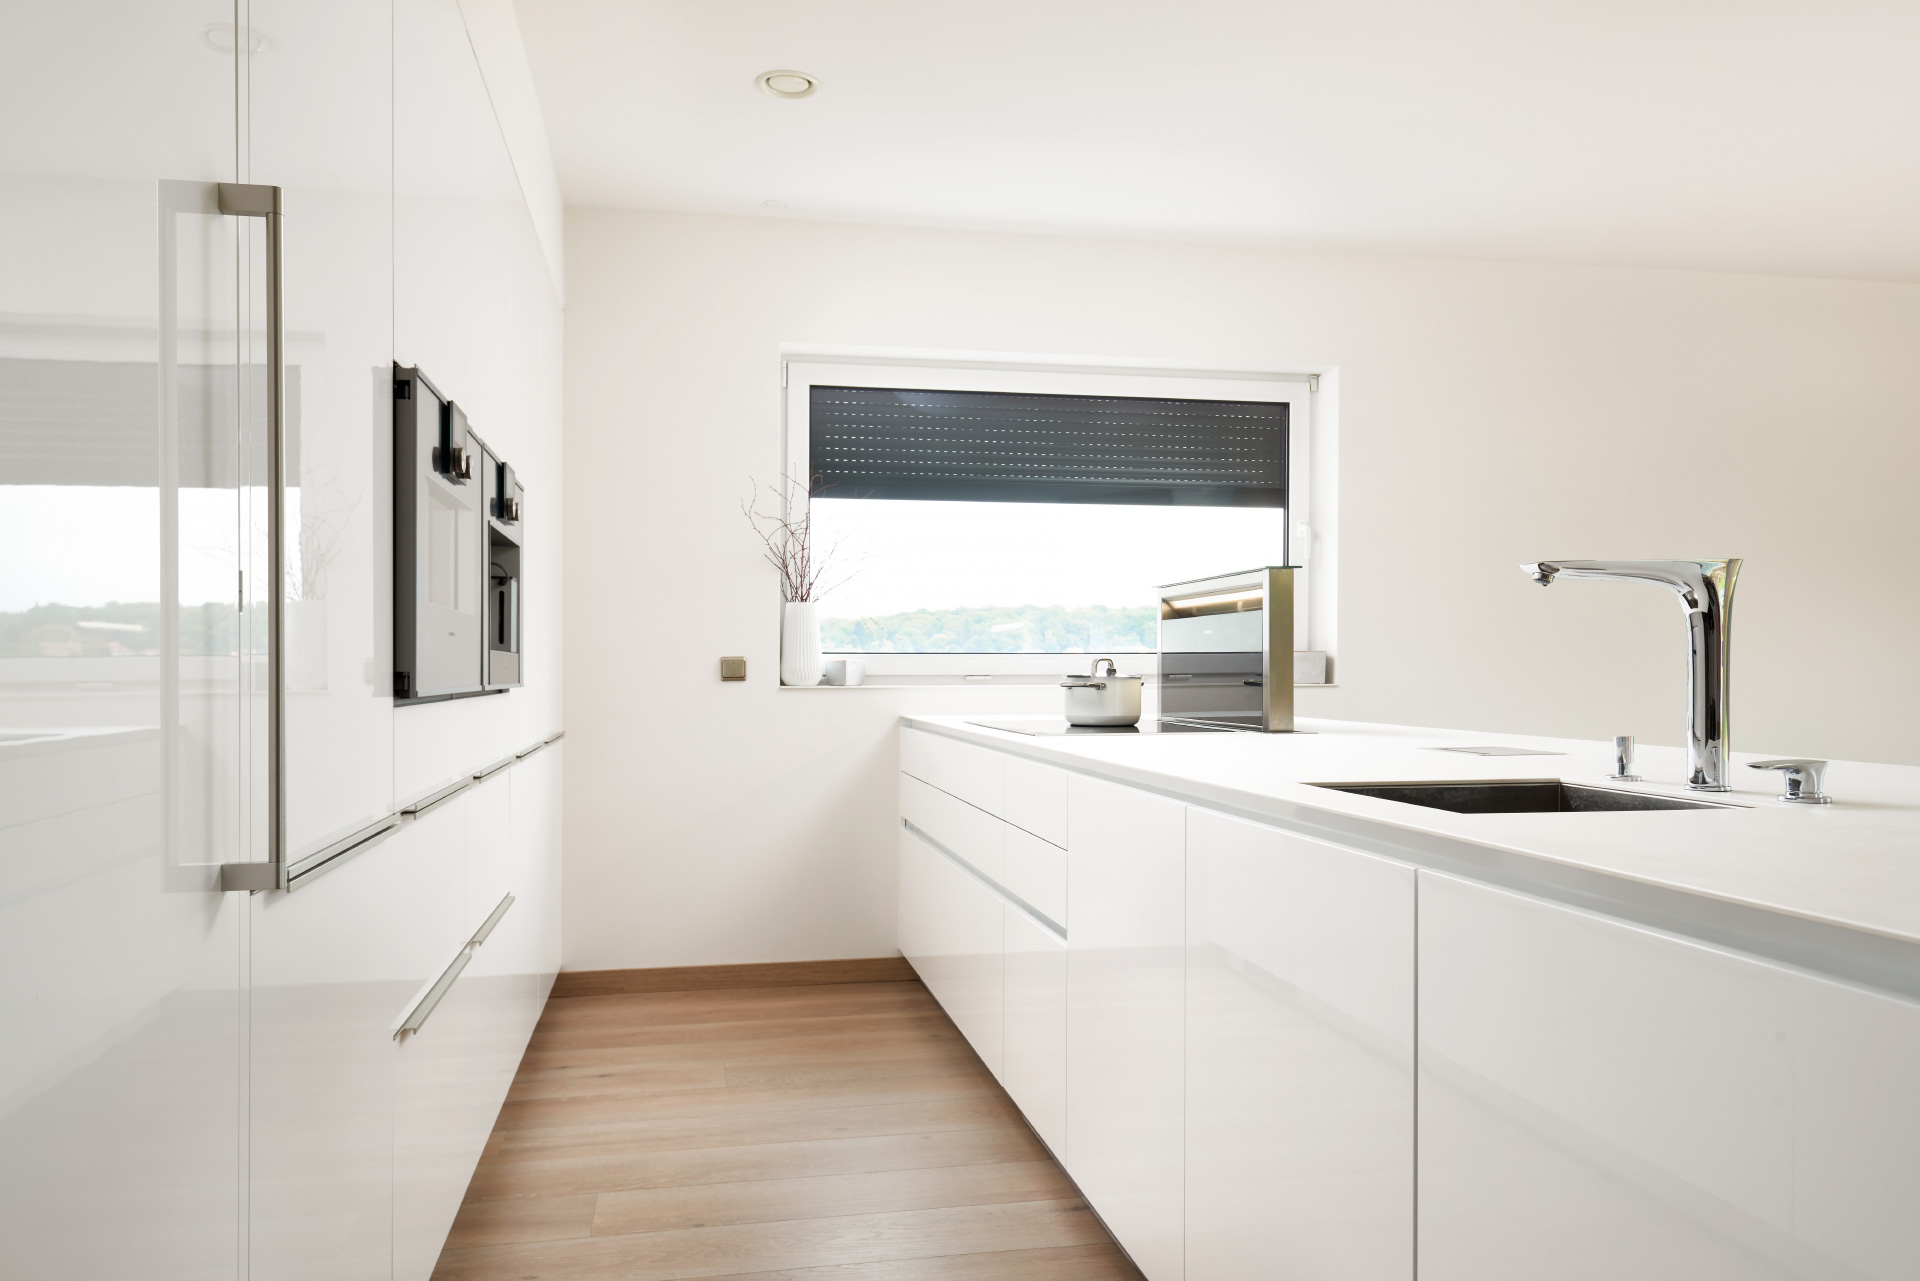 Hanák nábytek COMFORT / ELITE kitchen in white glossy varnish